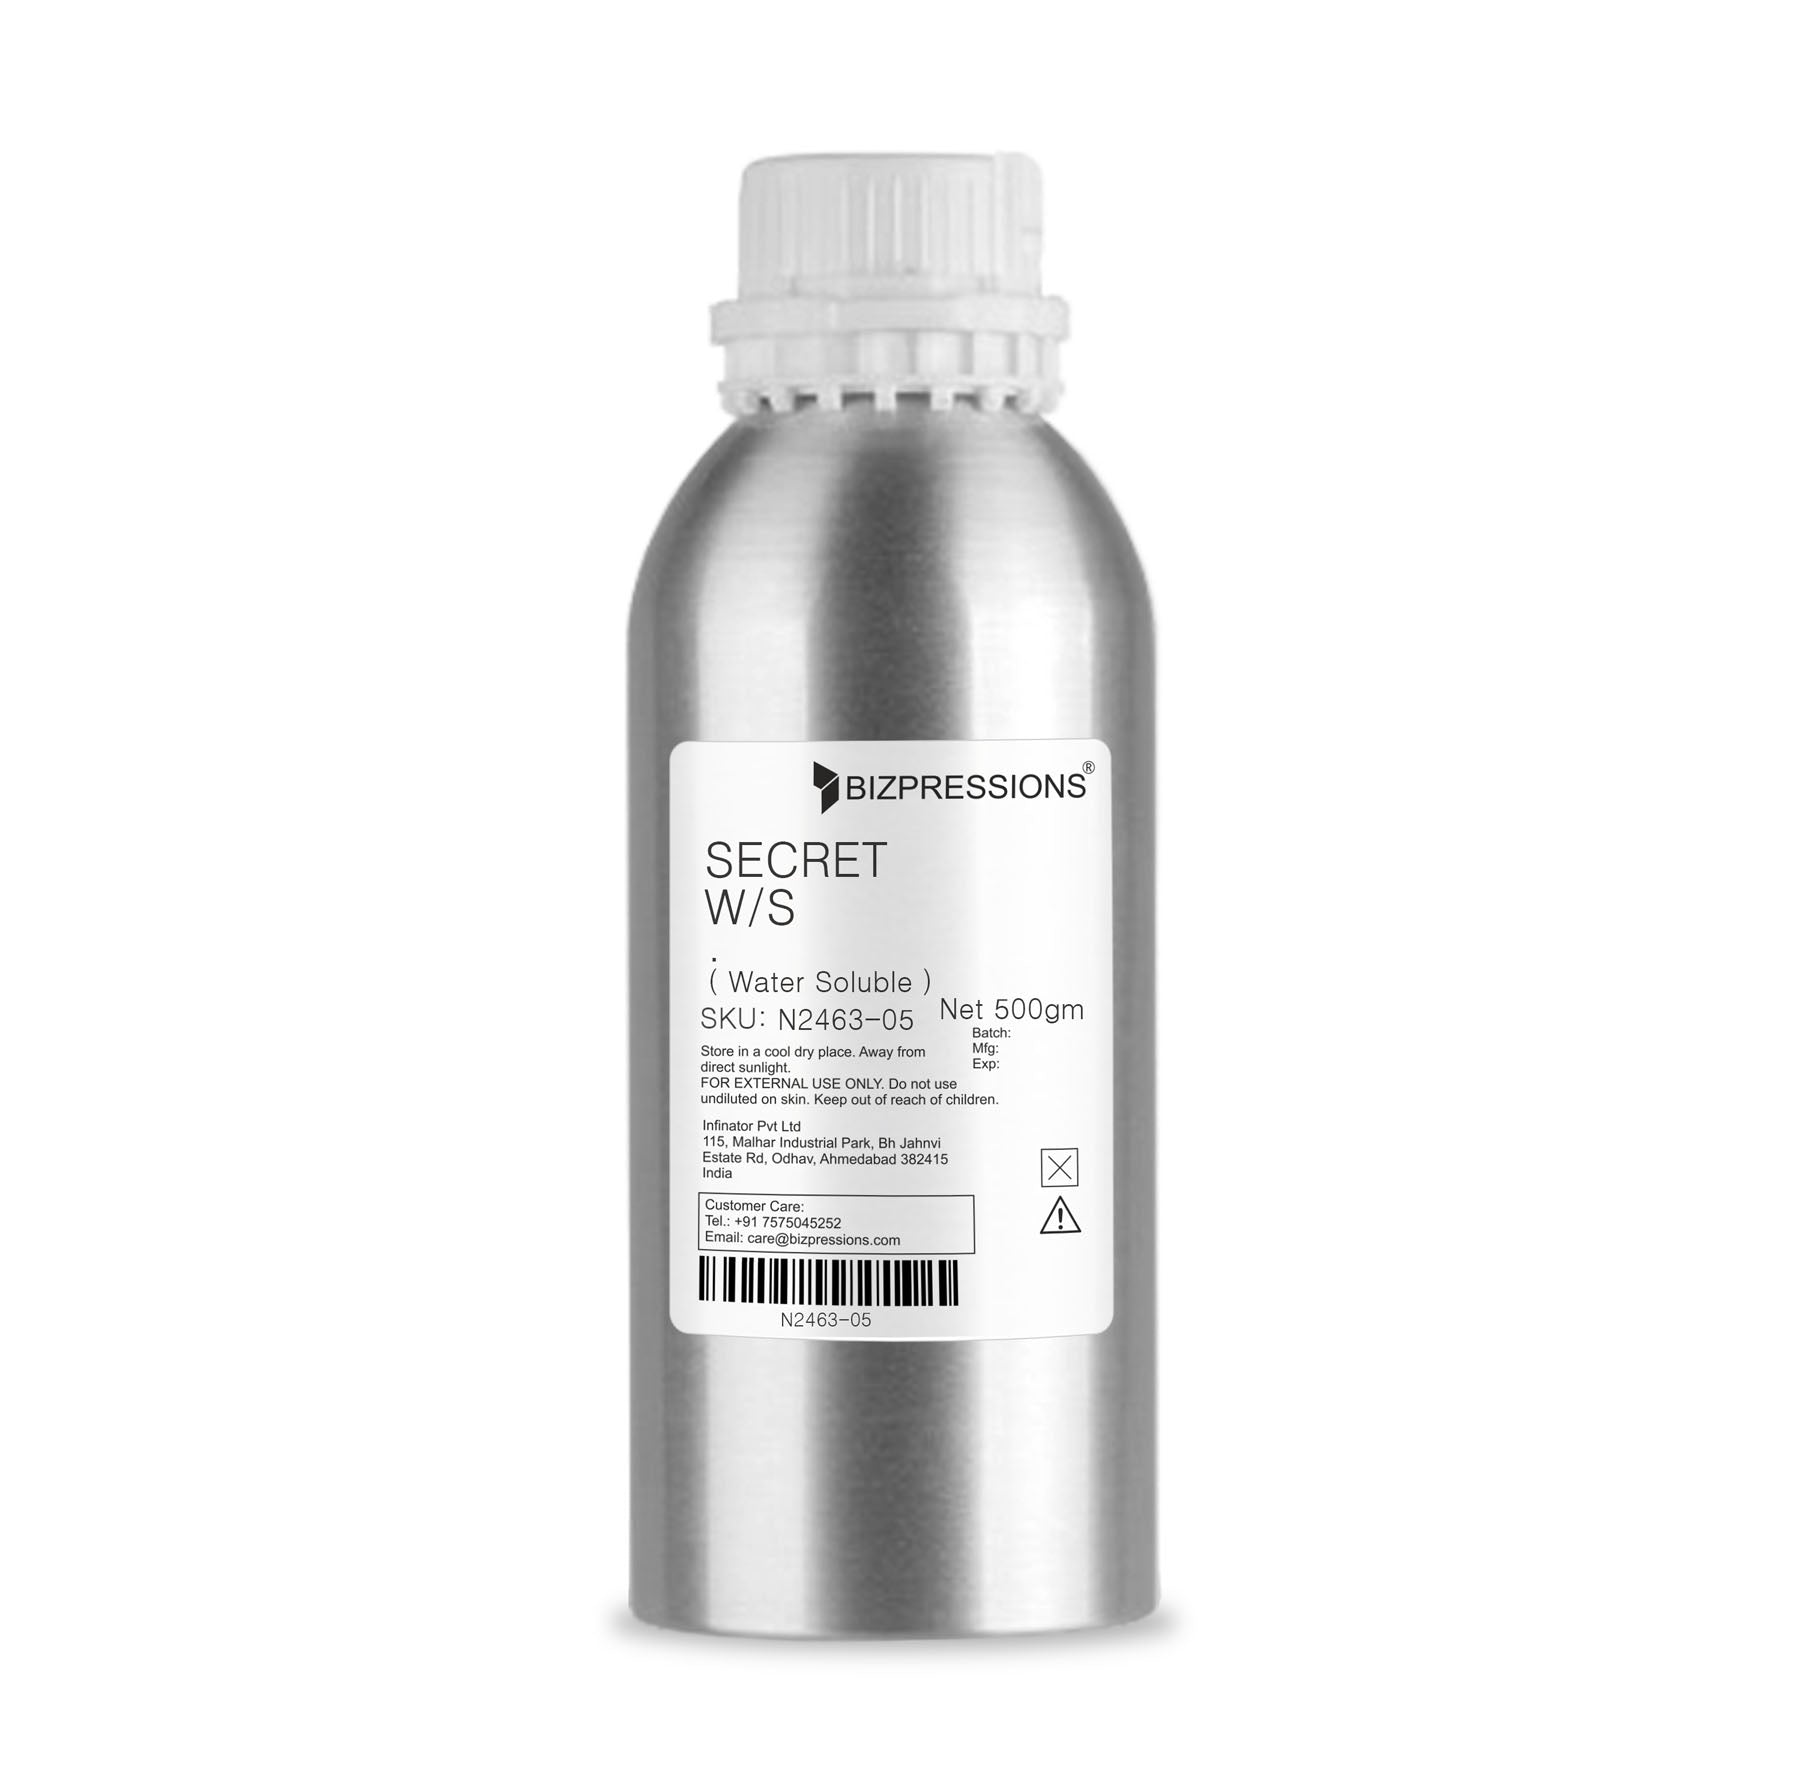 SECRET W/S - Fragrance ( Water Soluble ) - 500 gm